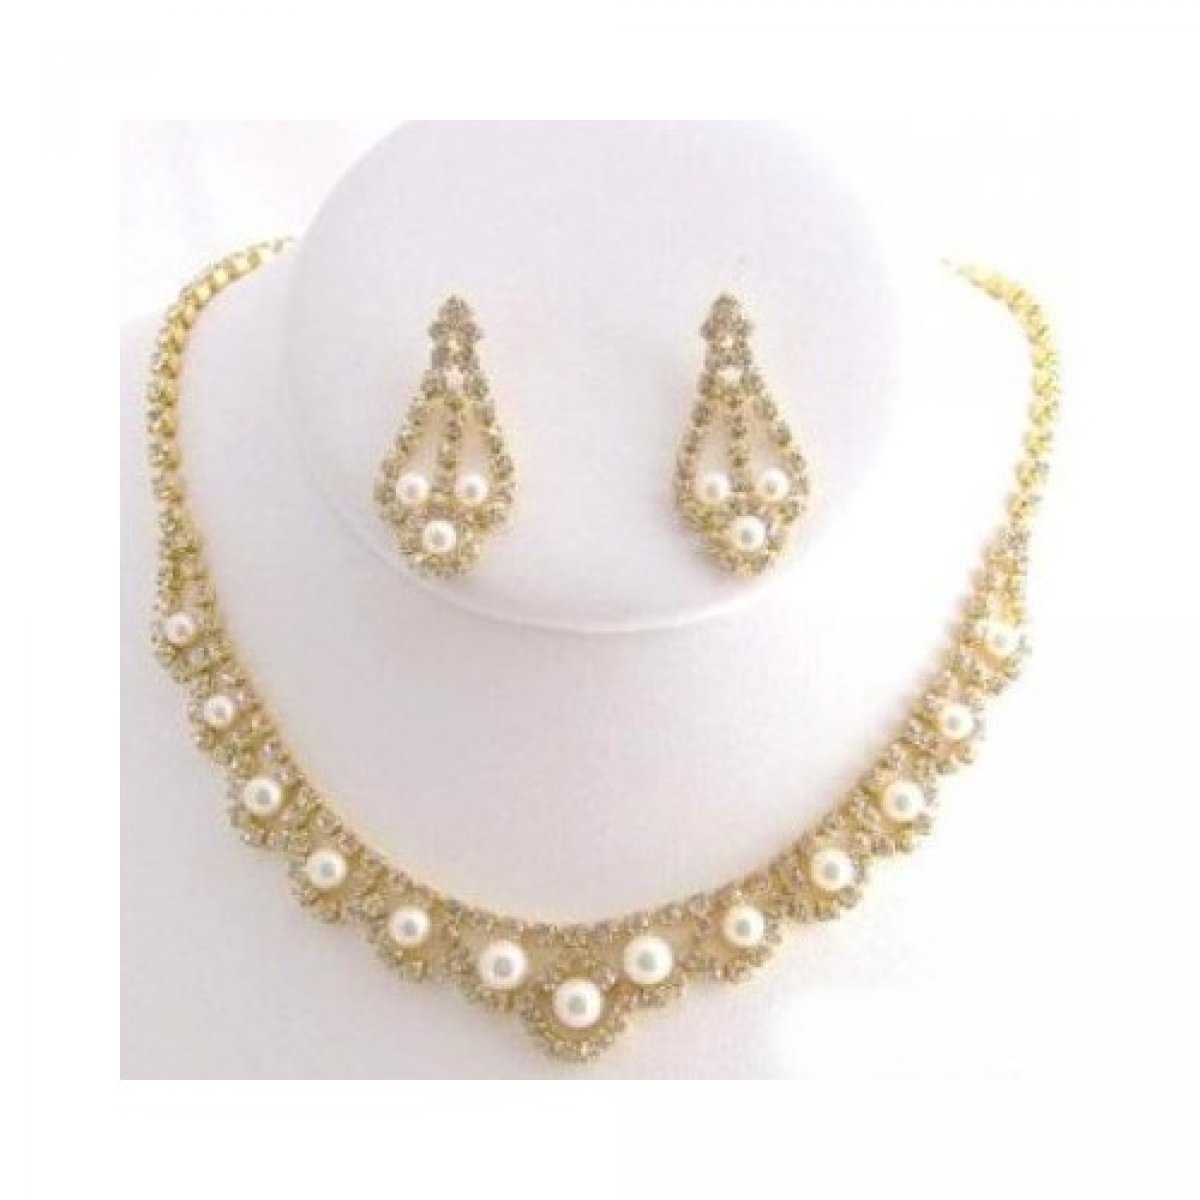 Parure mariée bijoux dorée - Perles blanches et cristal clair